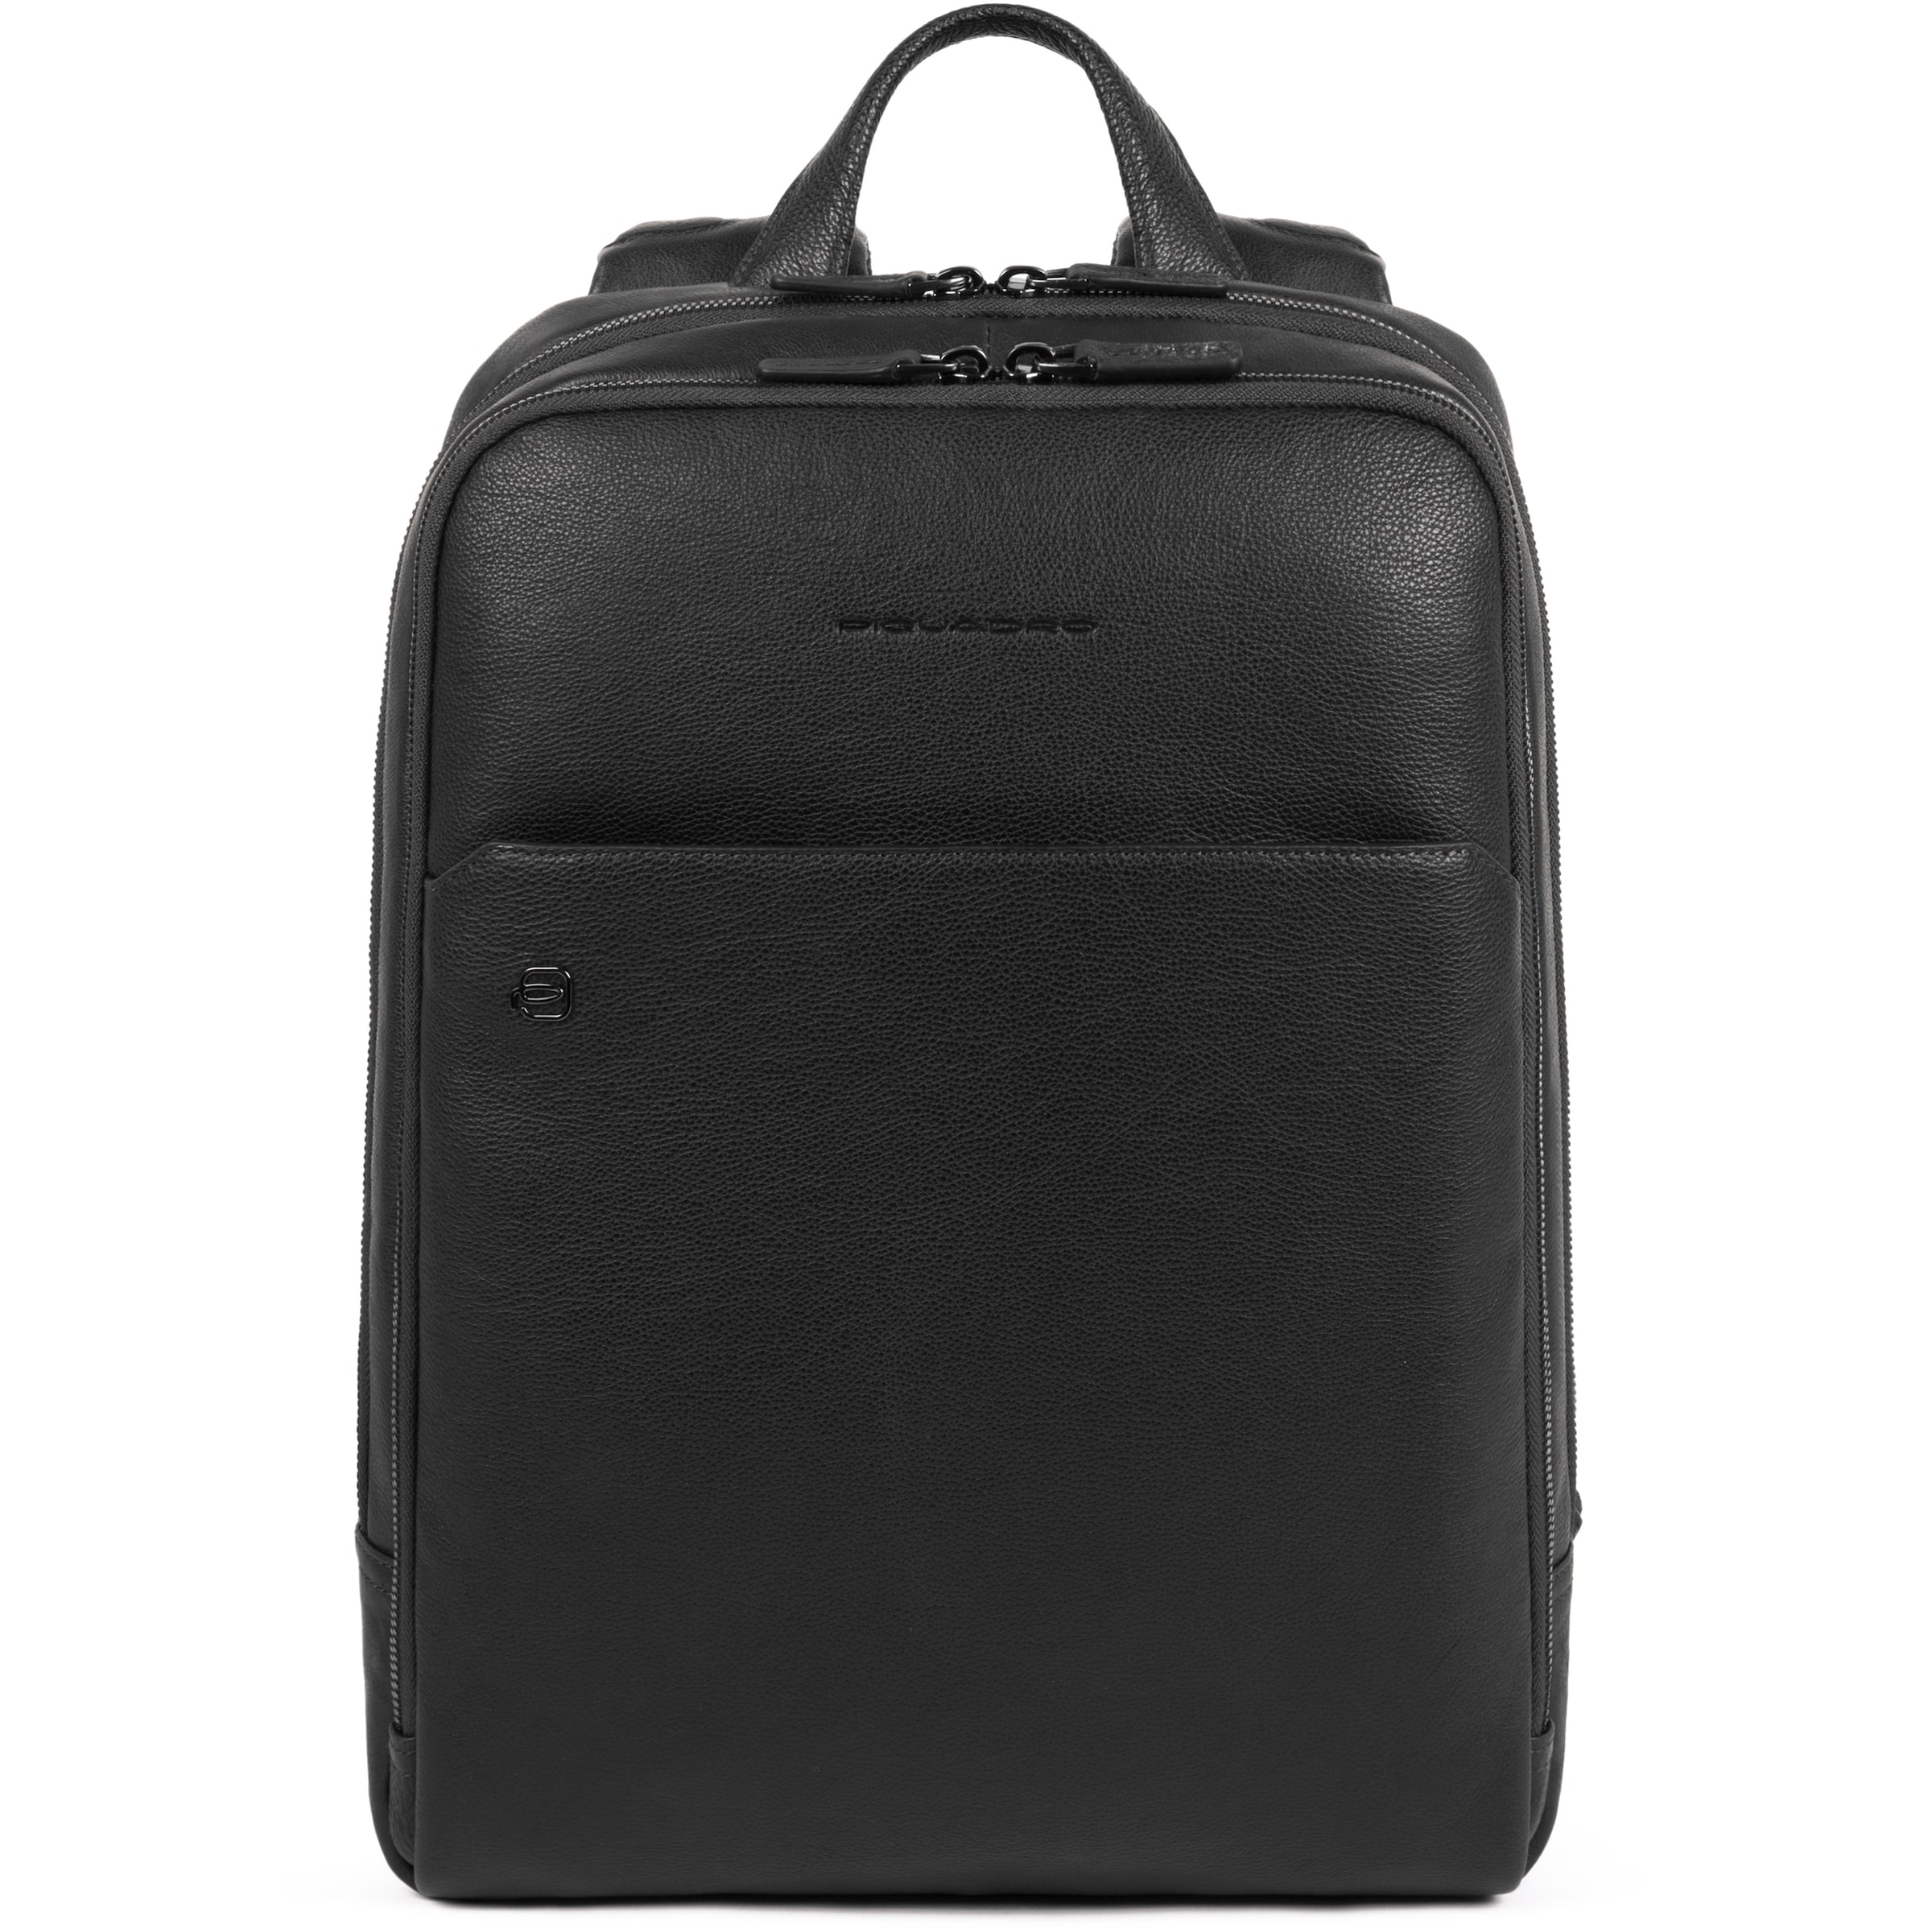 Sacs et sacs à dos Sac d’ordinateur portable Black Square Piquadro en Noir 